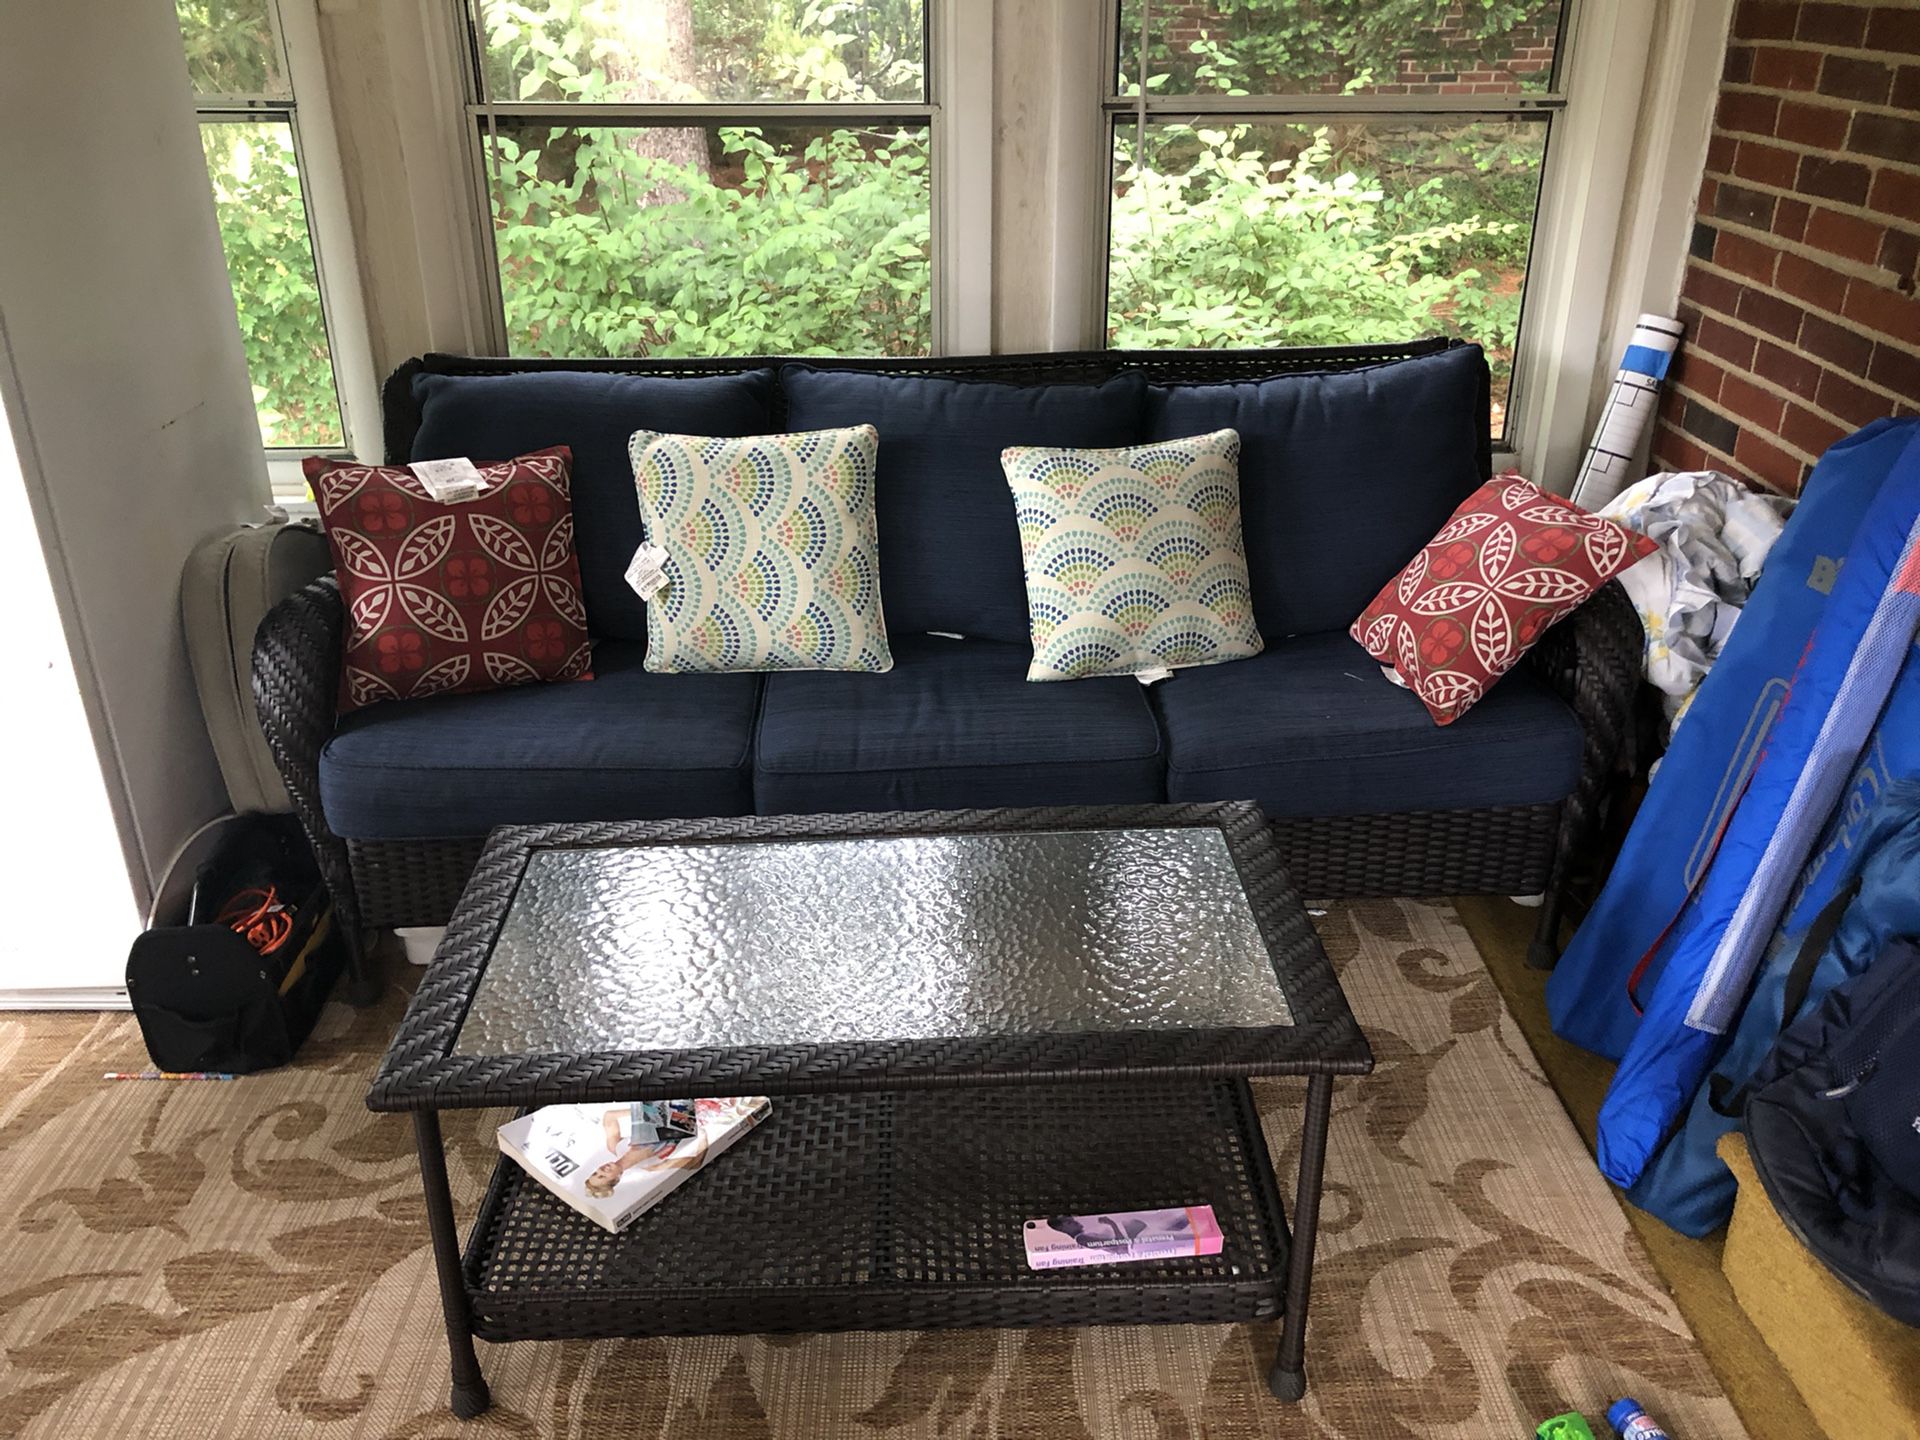 Indoor/Outdoor Wicker Sofa & Coffee Table.